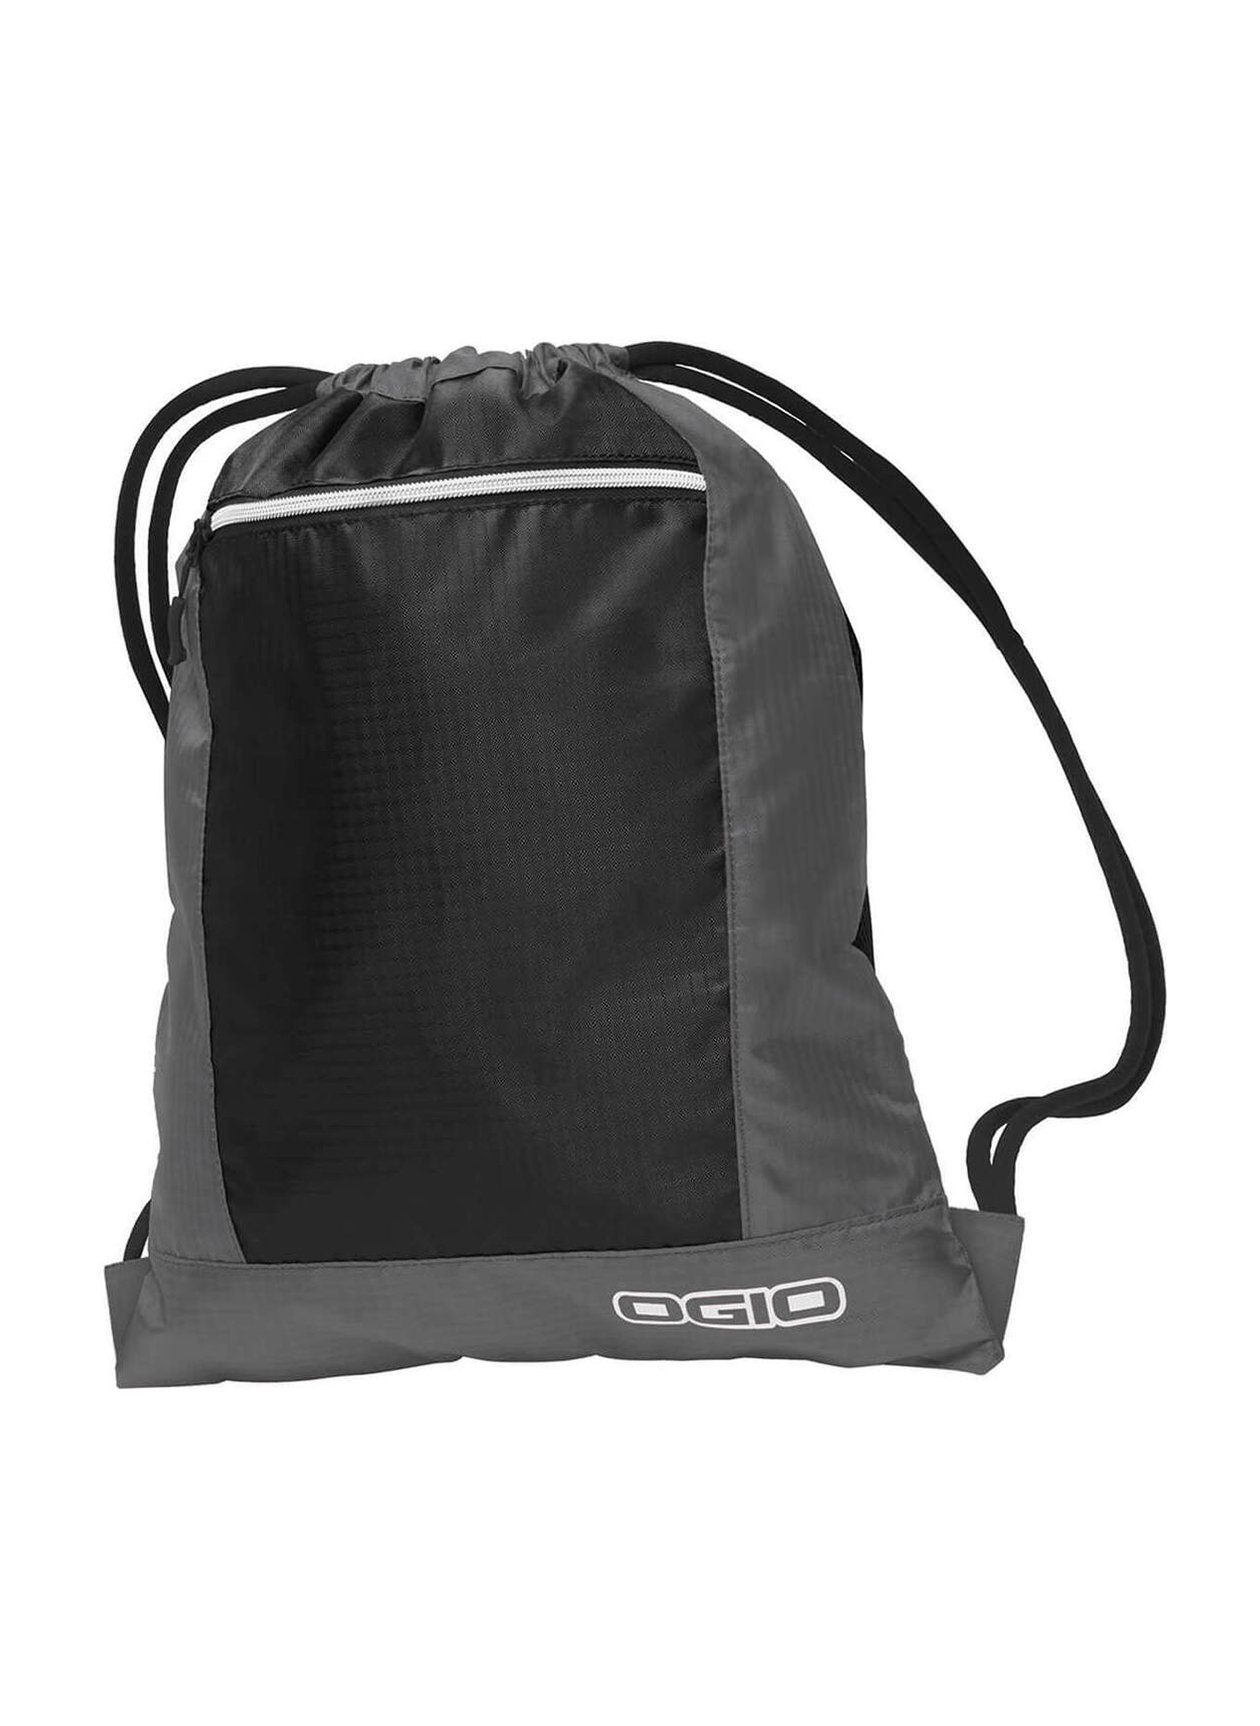 Grey / Black OGIO Pulse Cinch Bag